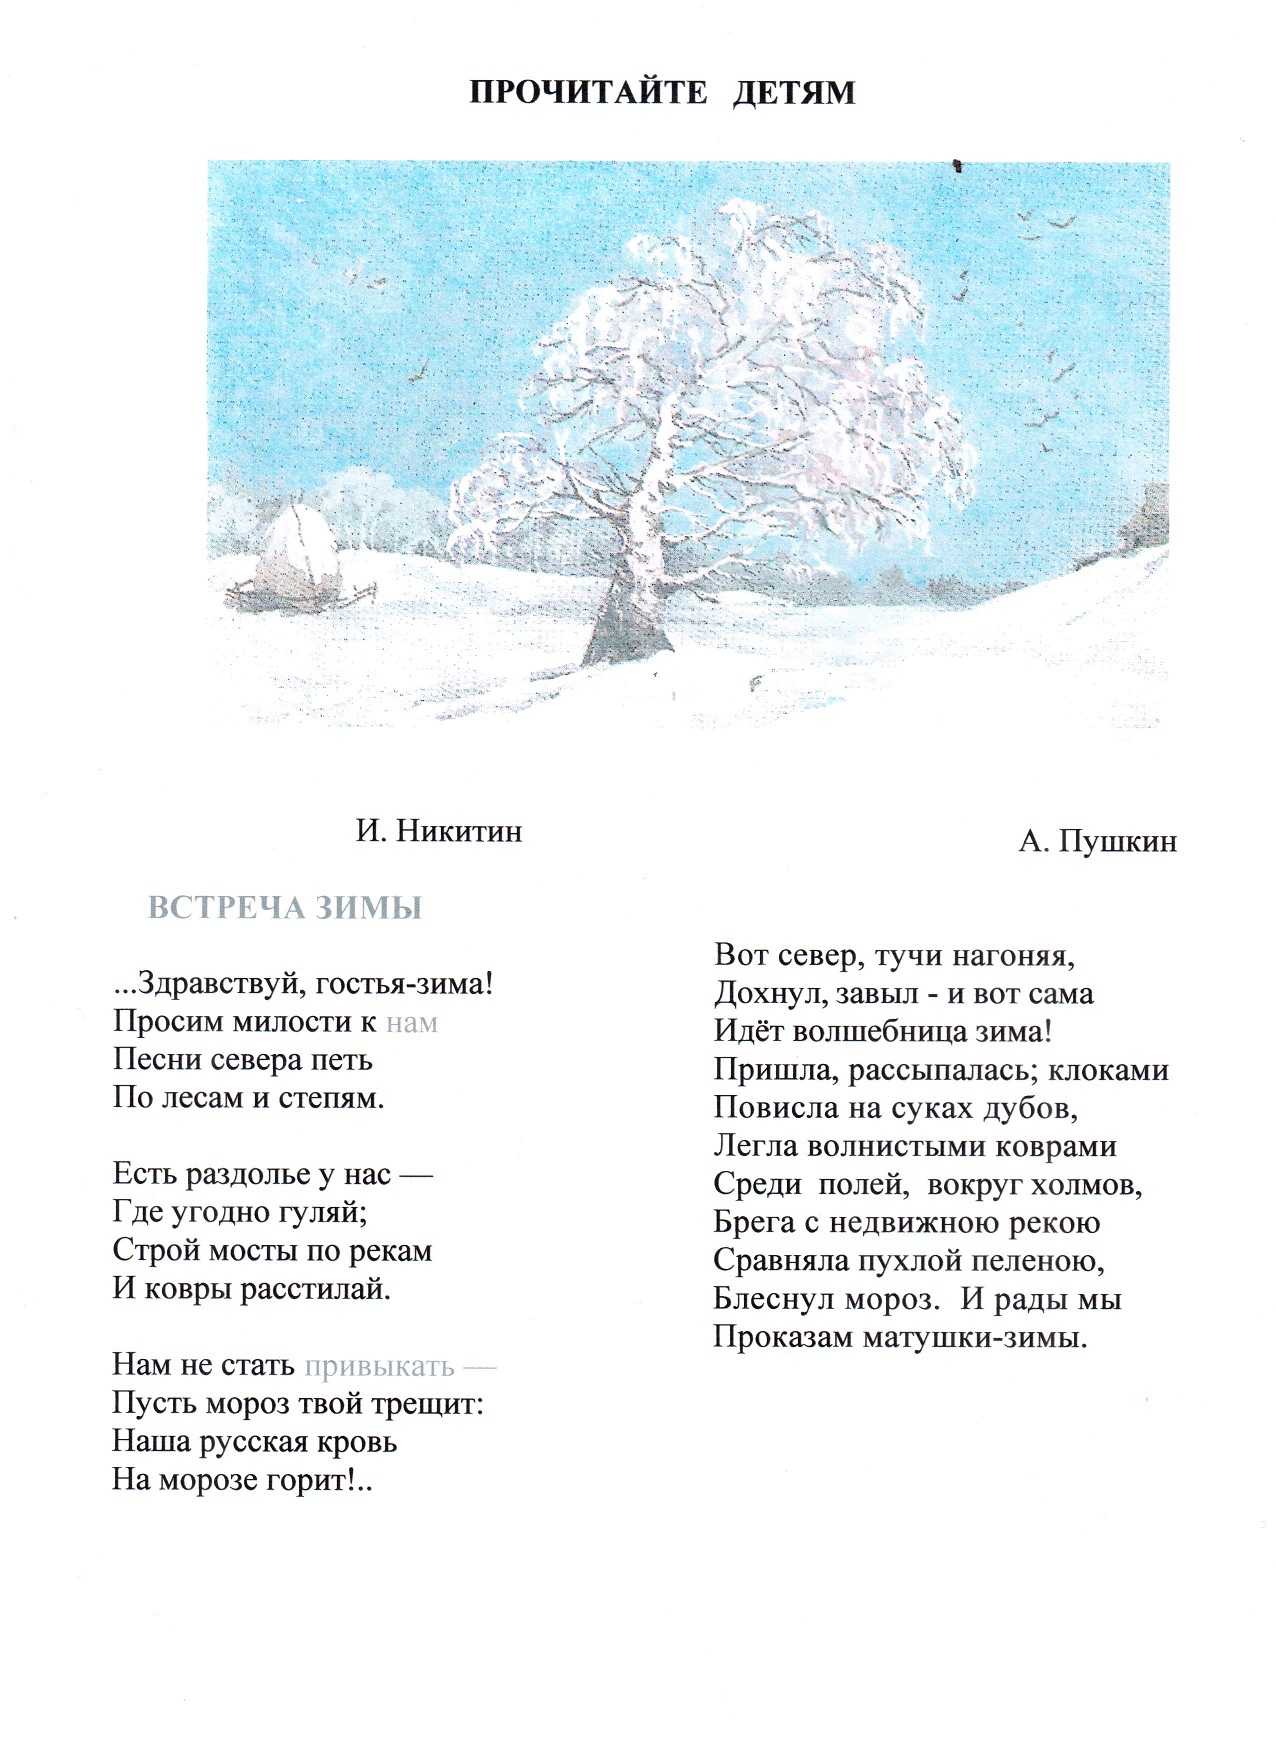 Стихи про зиму ️ короткие и красивые стихи про снег, зиму русских поэтов